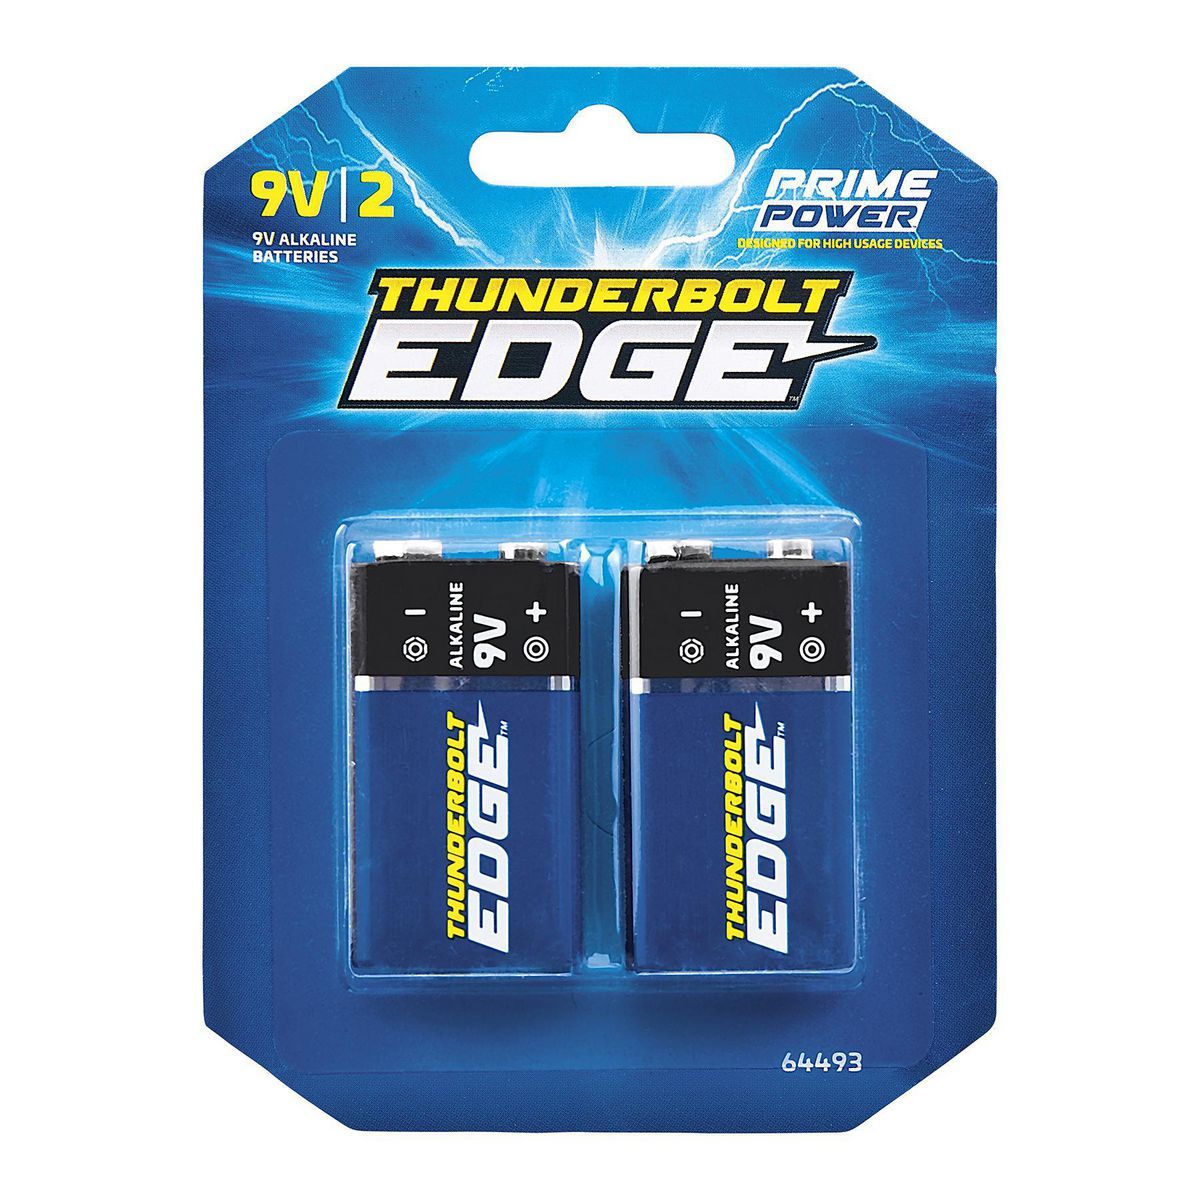 THUNDERBOLT EDGE 9V Alkaline Batteries, 2 Pack